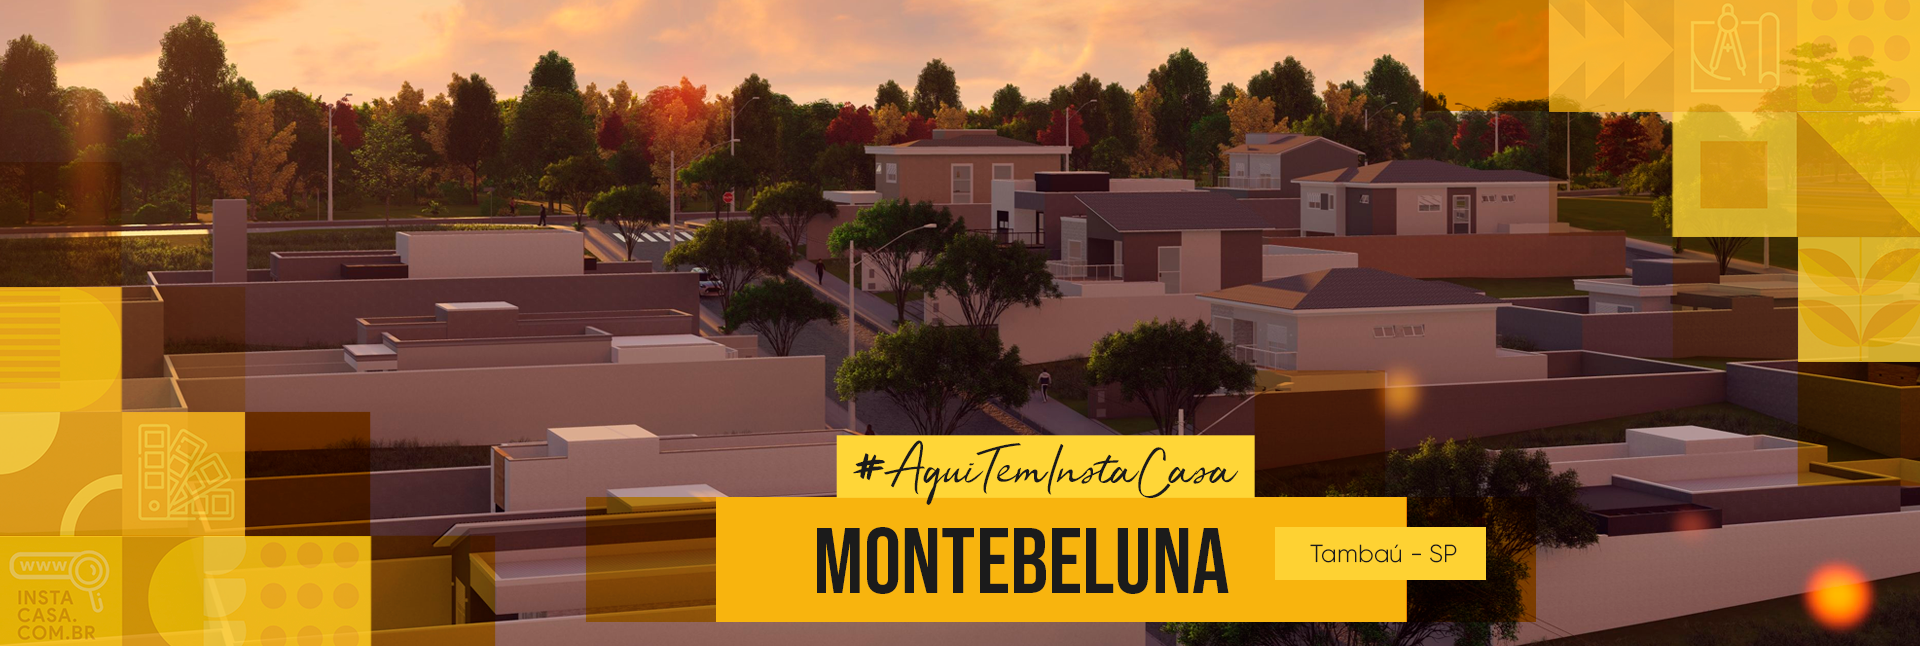 Montebelluna